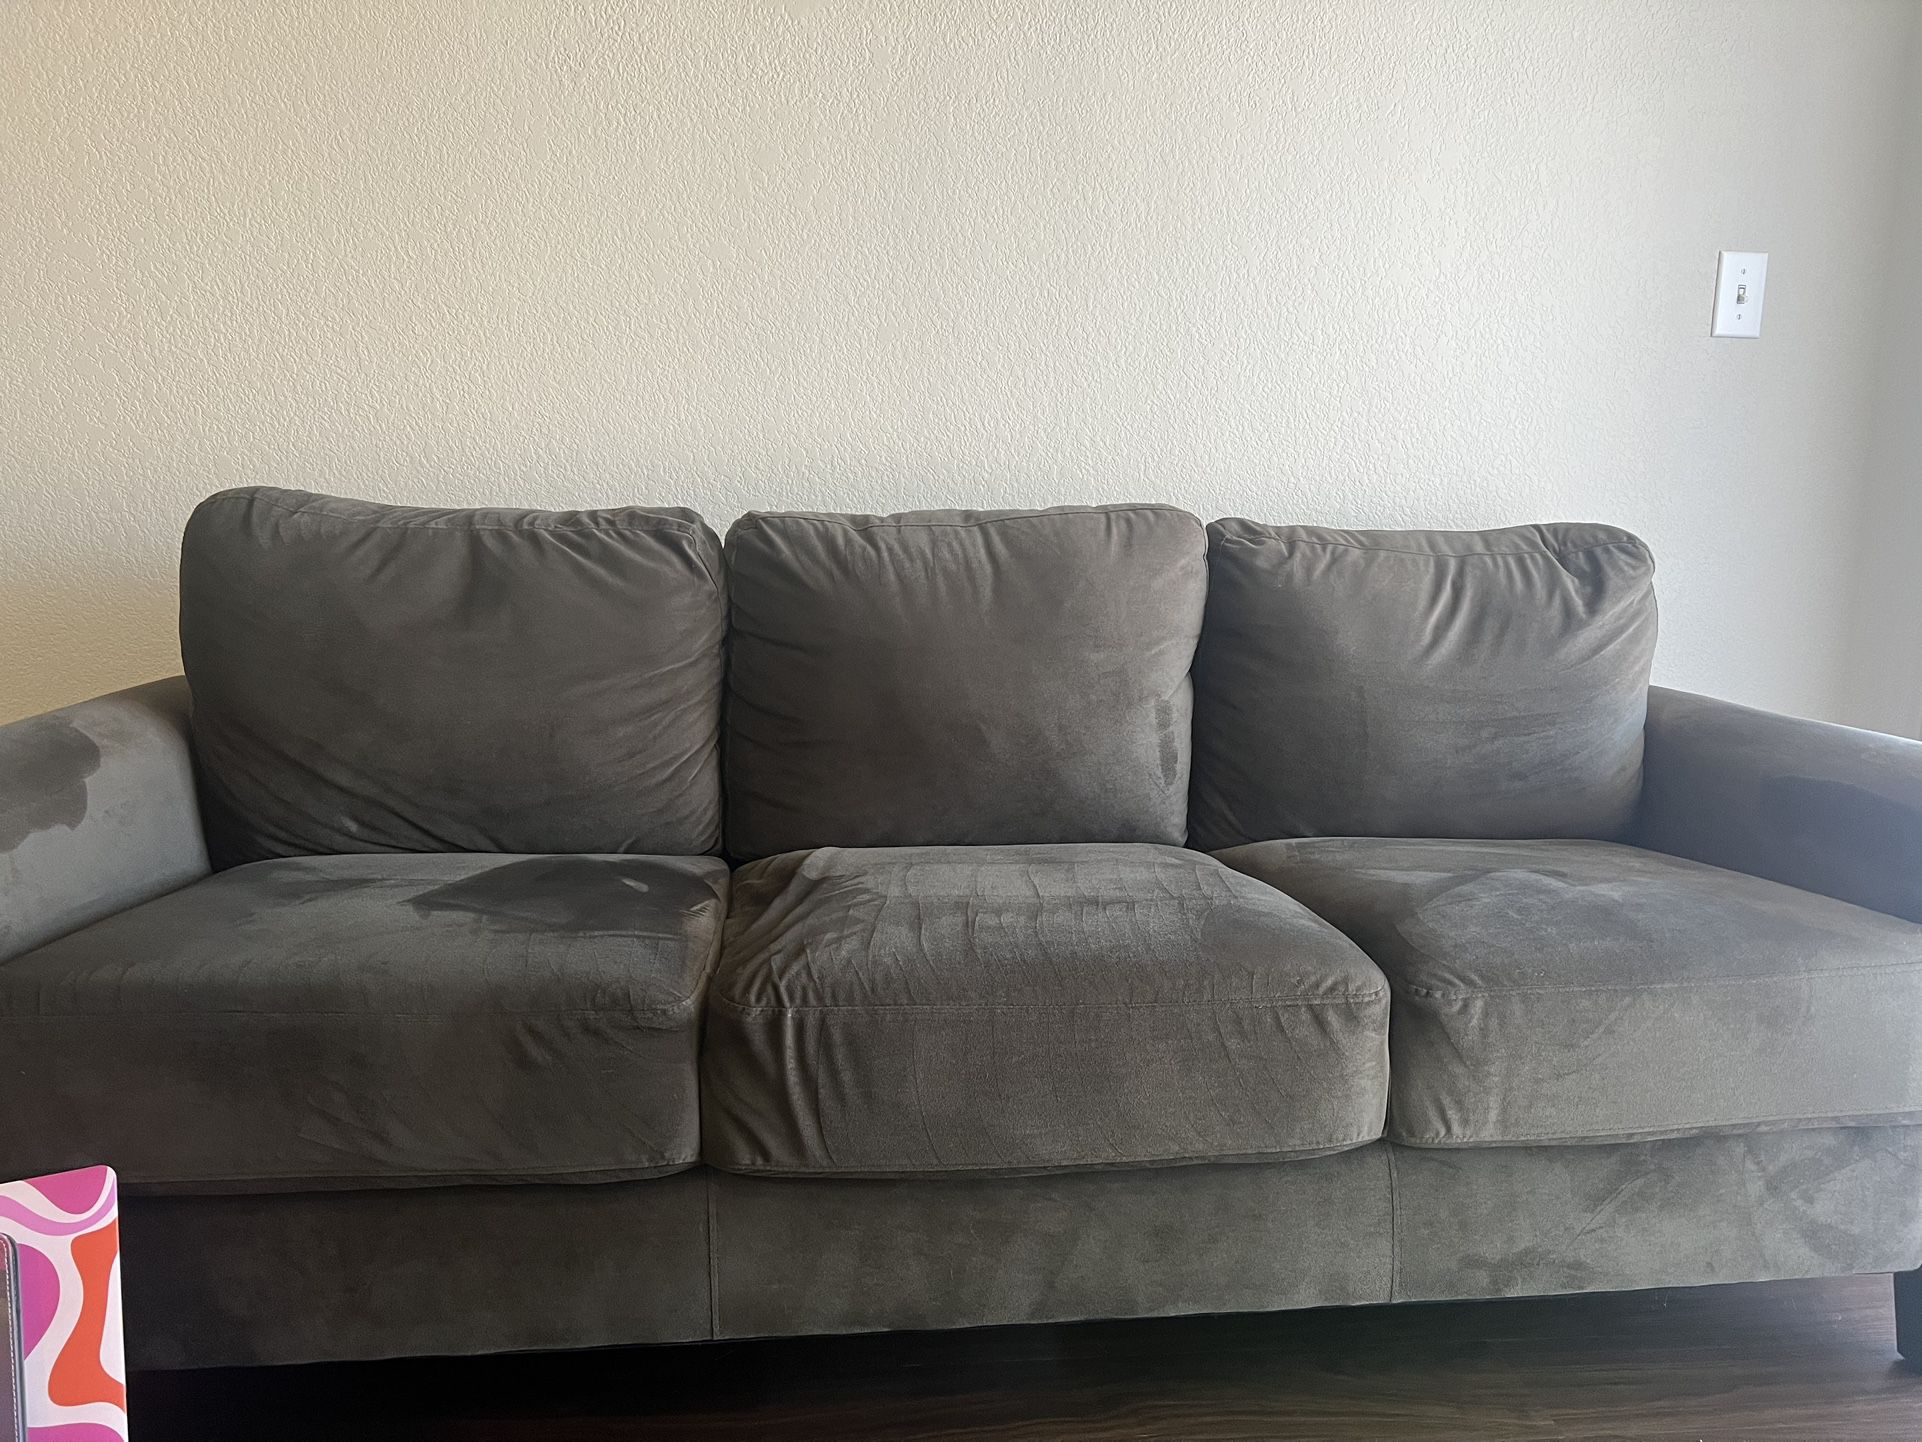 Soft Dark Brown Couch